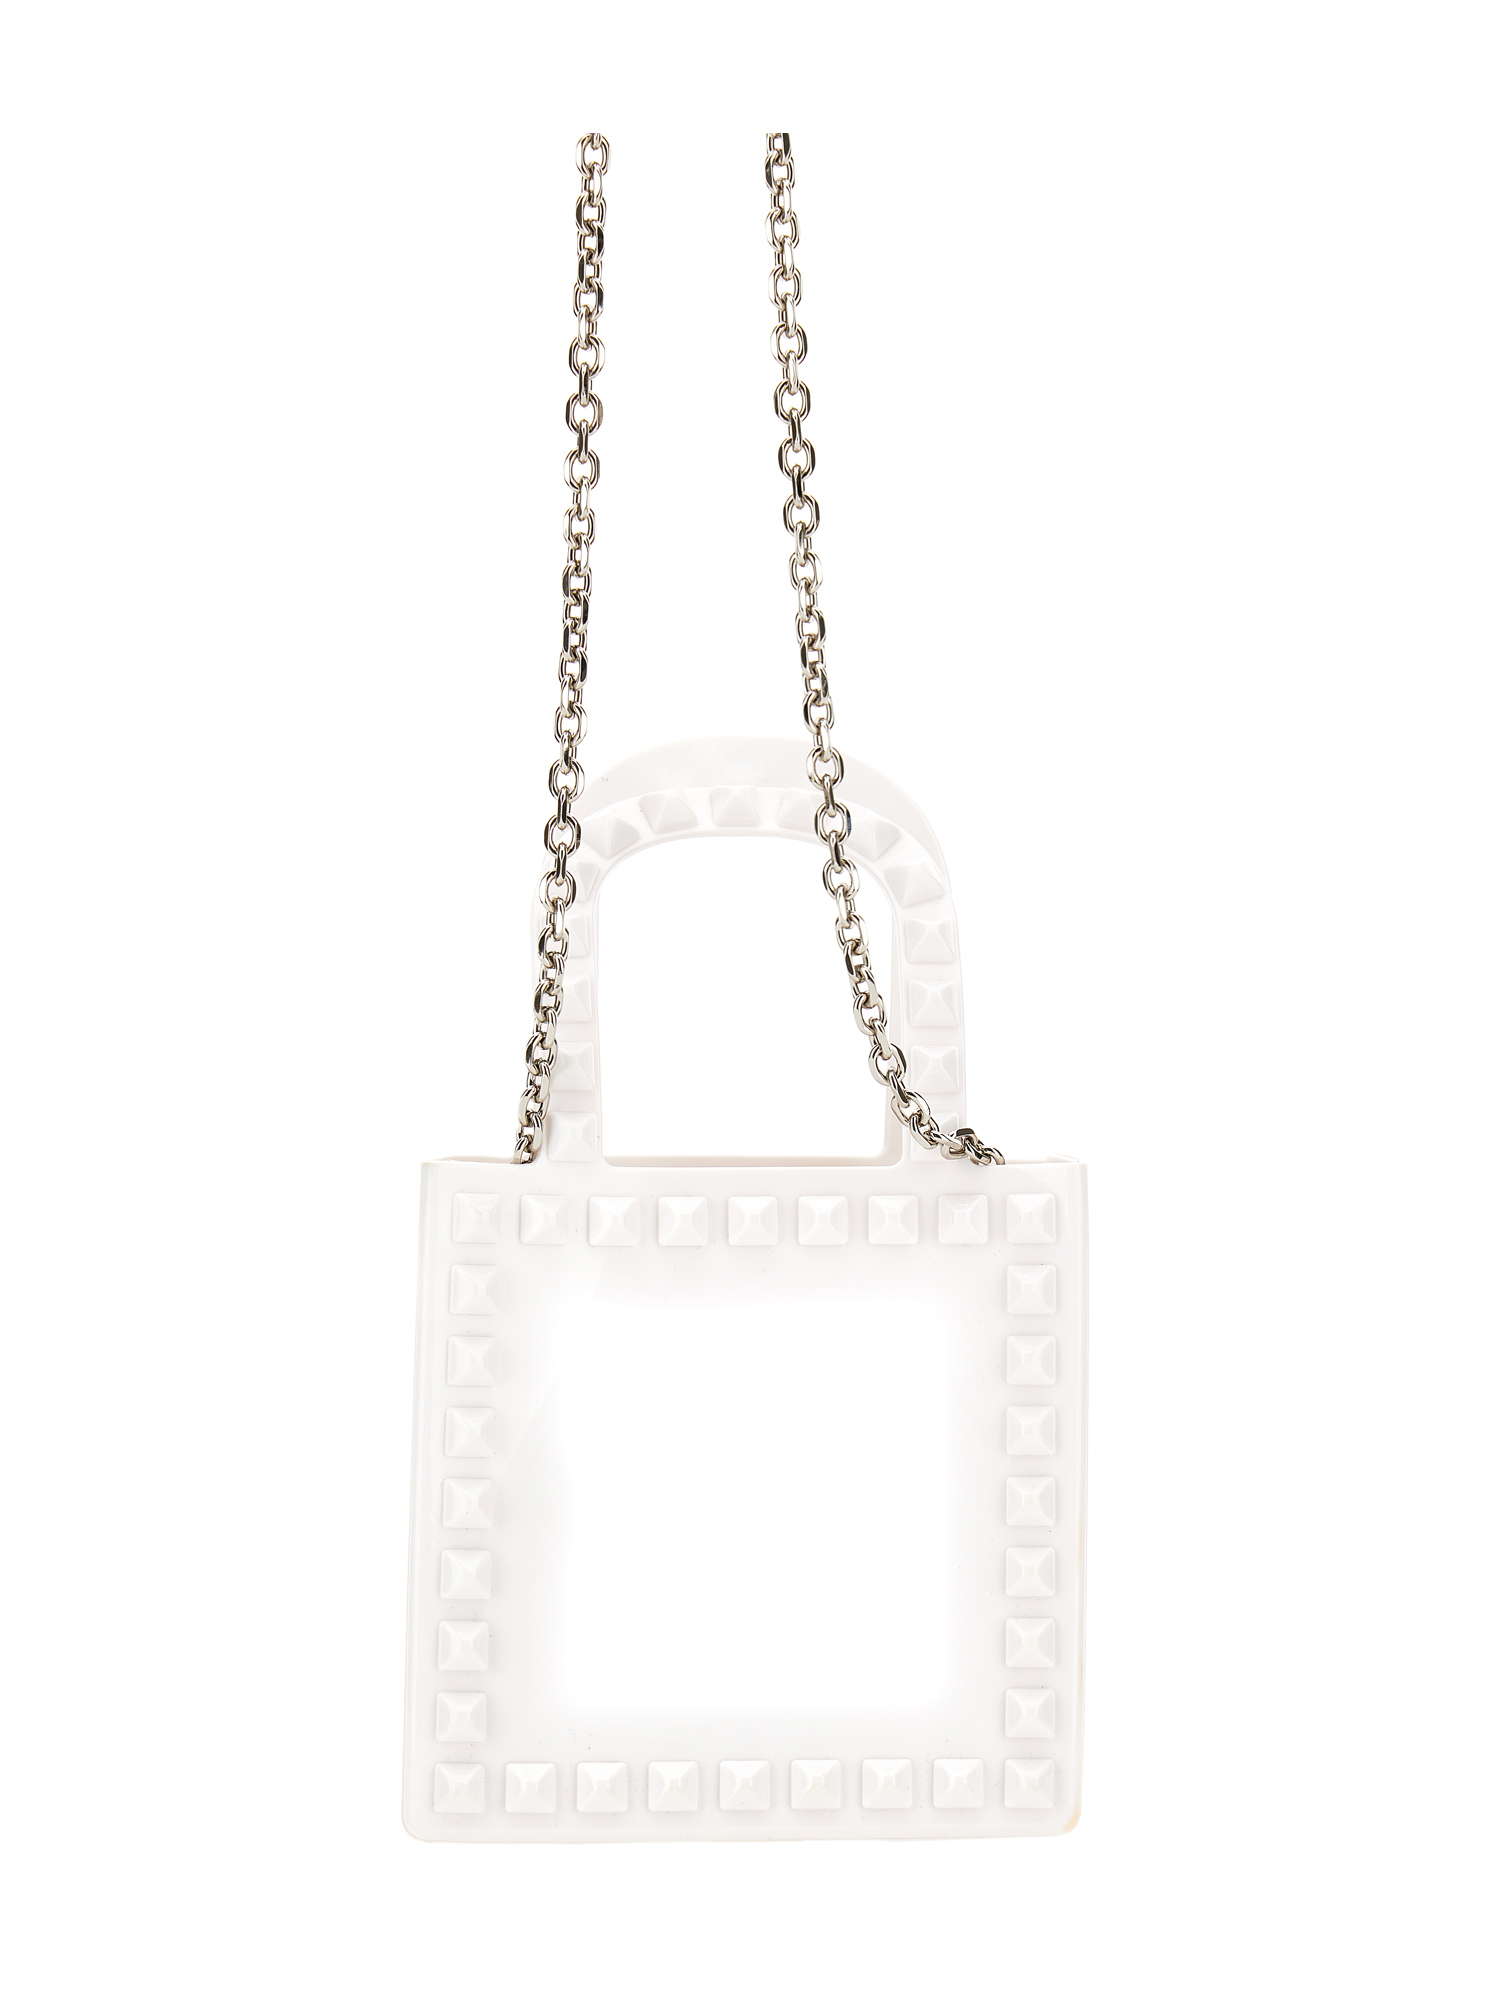 Shop Monnalisa Pvc Shopper-style Minibag In White